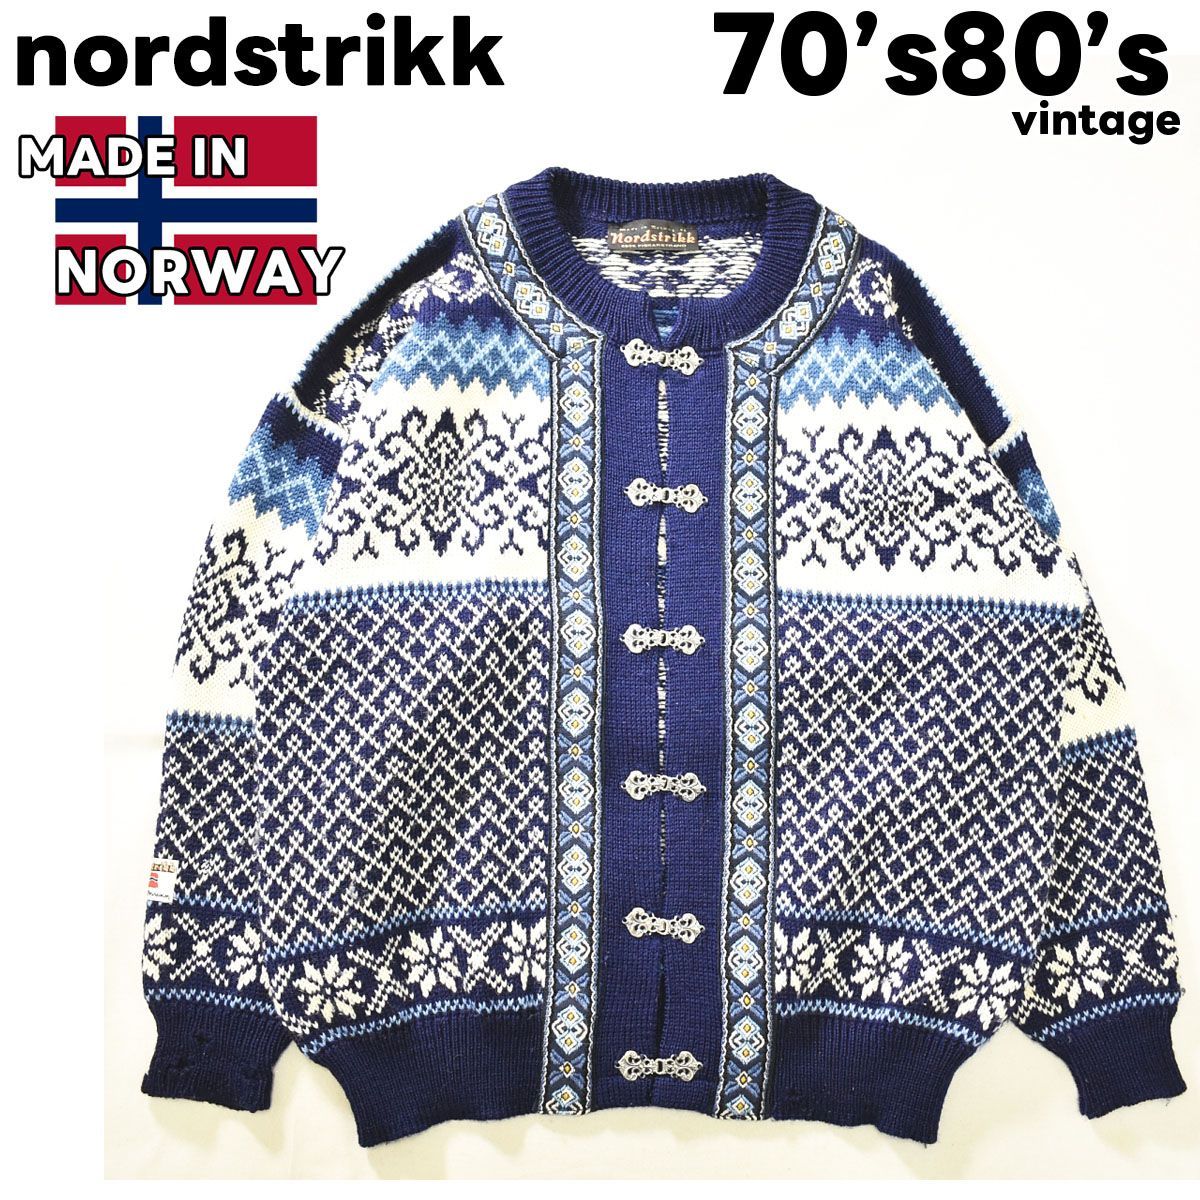 ノルウェー製 古着 nordstrikk ノードストリック メタルフック